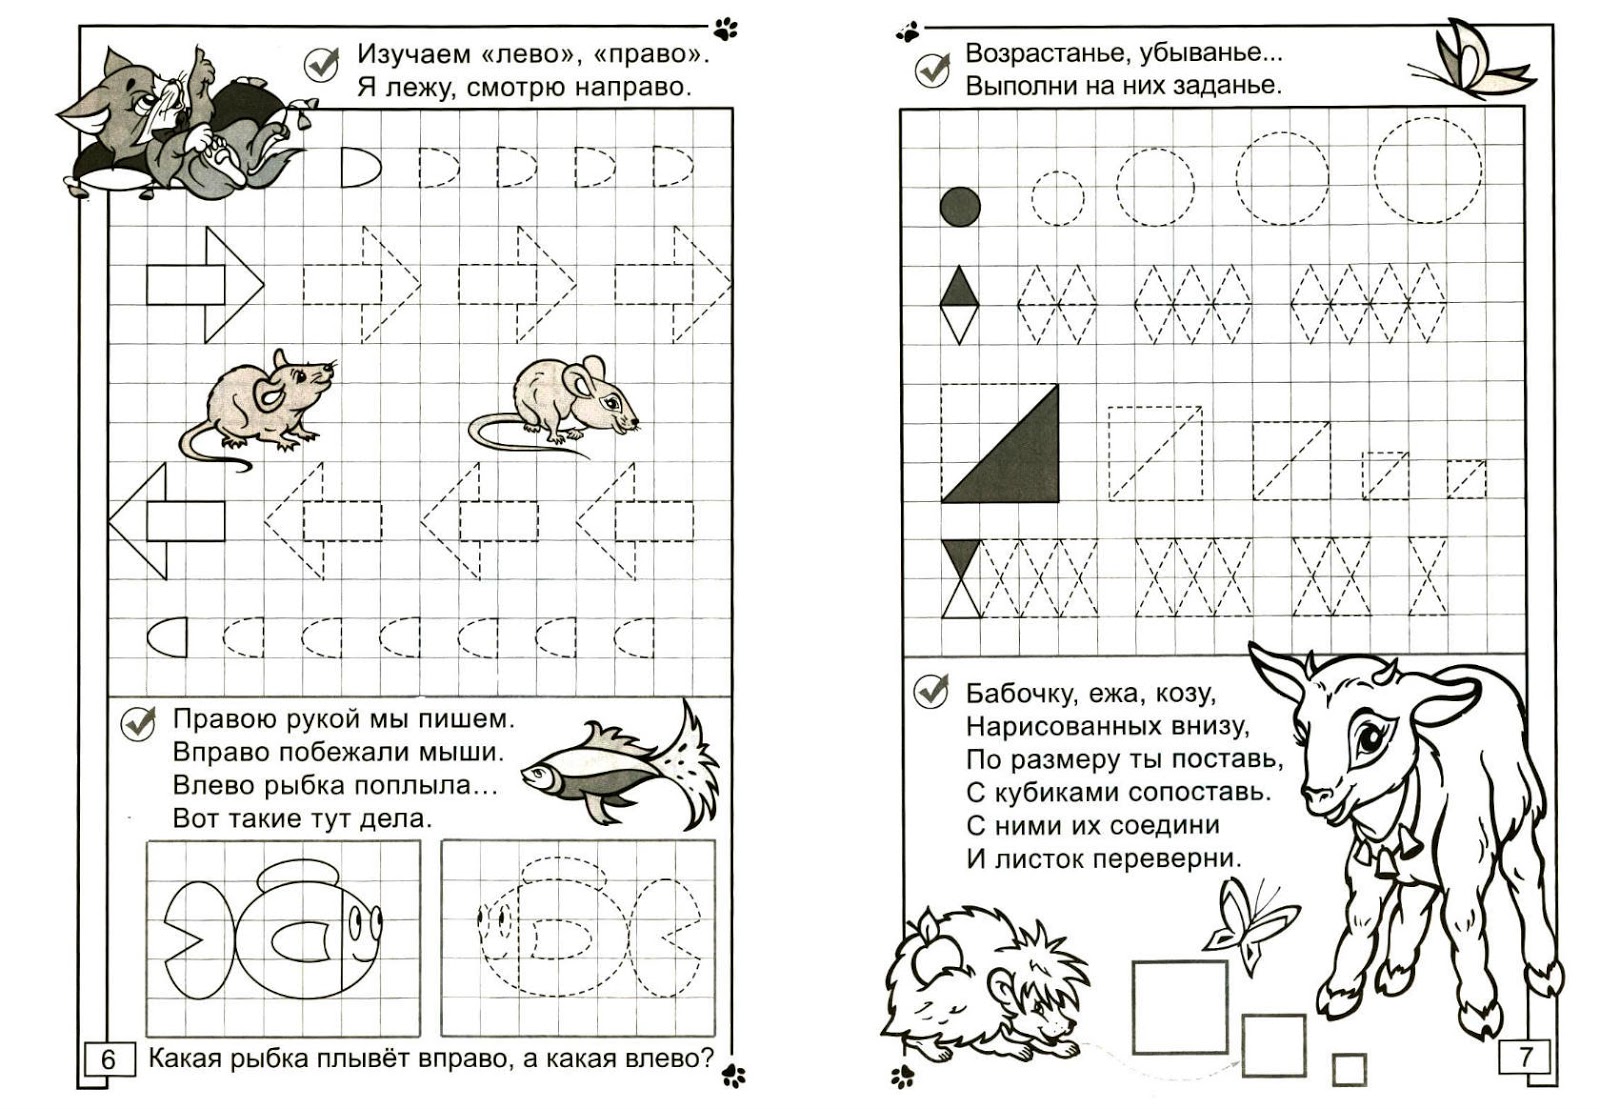 worksheets for kids, worksheets for kindergarten, worksheets for preschool, worksheets for 3 year olds